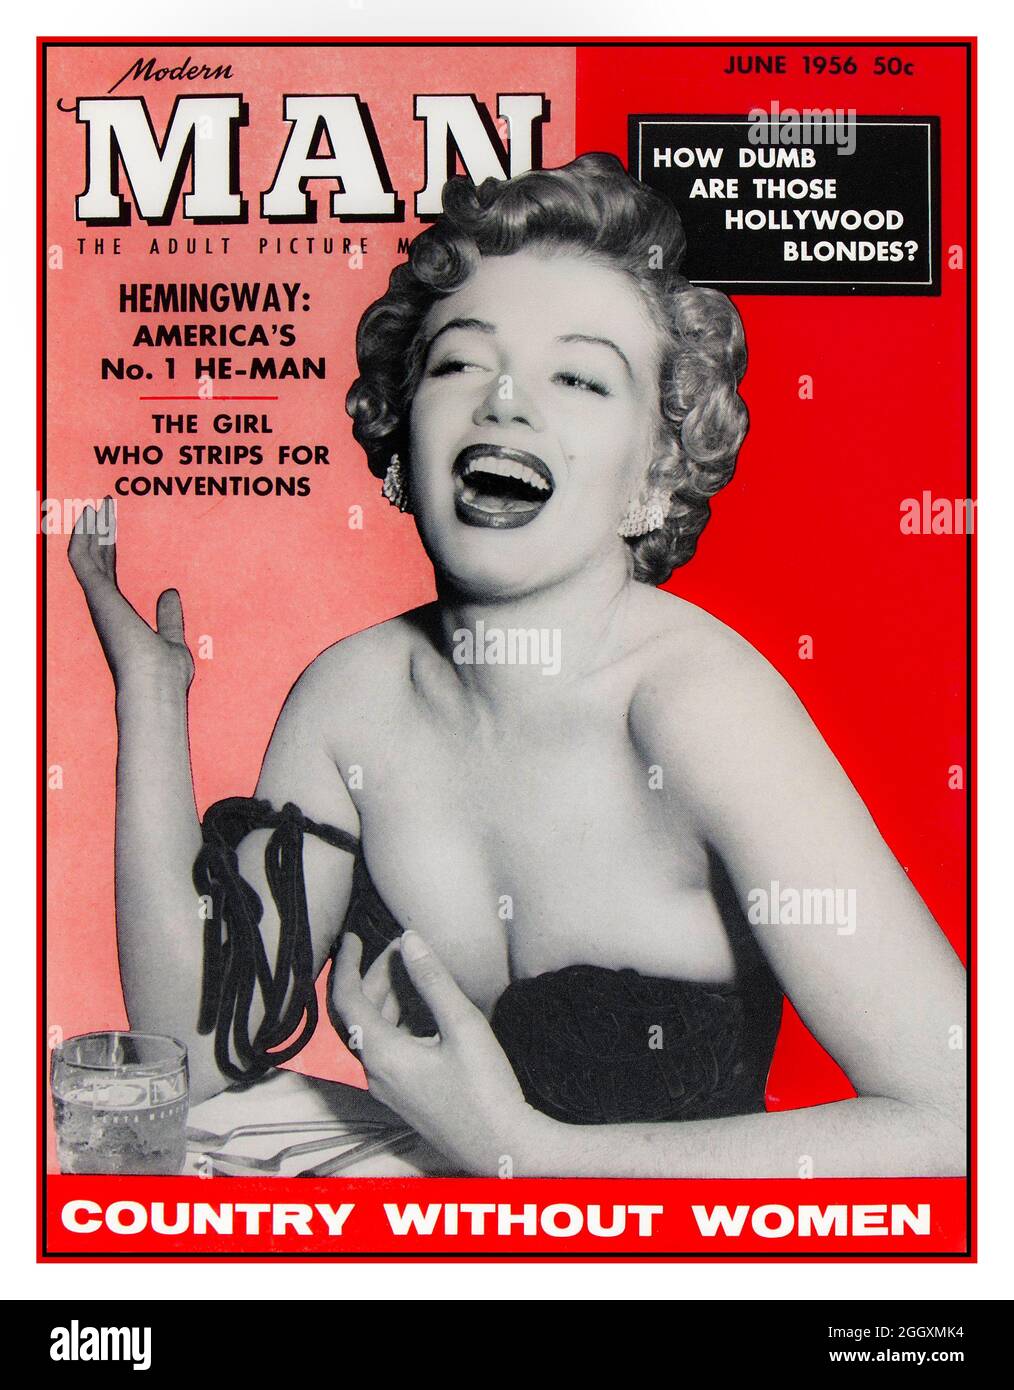 1956 Marilyn Monroe sur la couverture de l'homme moderne un homme de potins et de tittilation magazine,. Avec la sexiste non politiquement correct question "comment muets sont ces Hollywood Blonds"? Vintage pour Homme présente des articles sexistes, des illustrations et des images de broches Banque D'Images